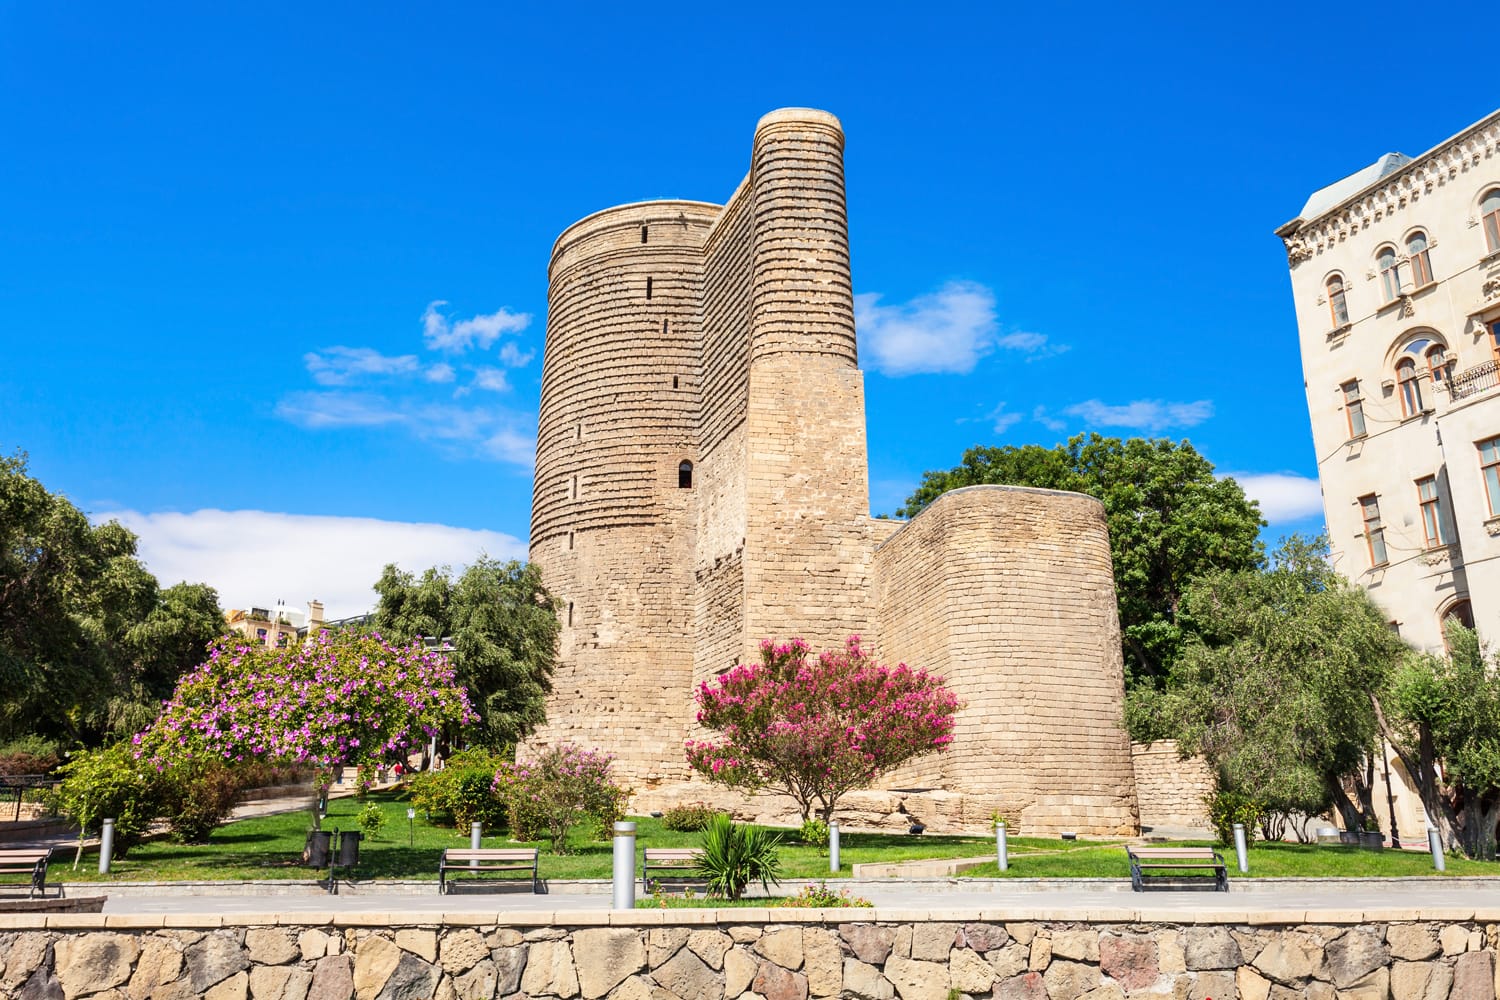 Menara Perawan juga dikenal sebagai Giz Galasi, terletak di Kota Tua di Baku, Azerbaijan.  Maiden Tower dibangun pada abad ke-12 sebagai bagian dari kota bertembok.